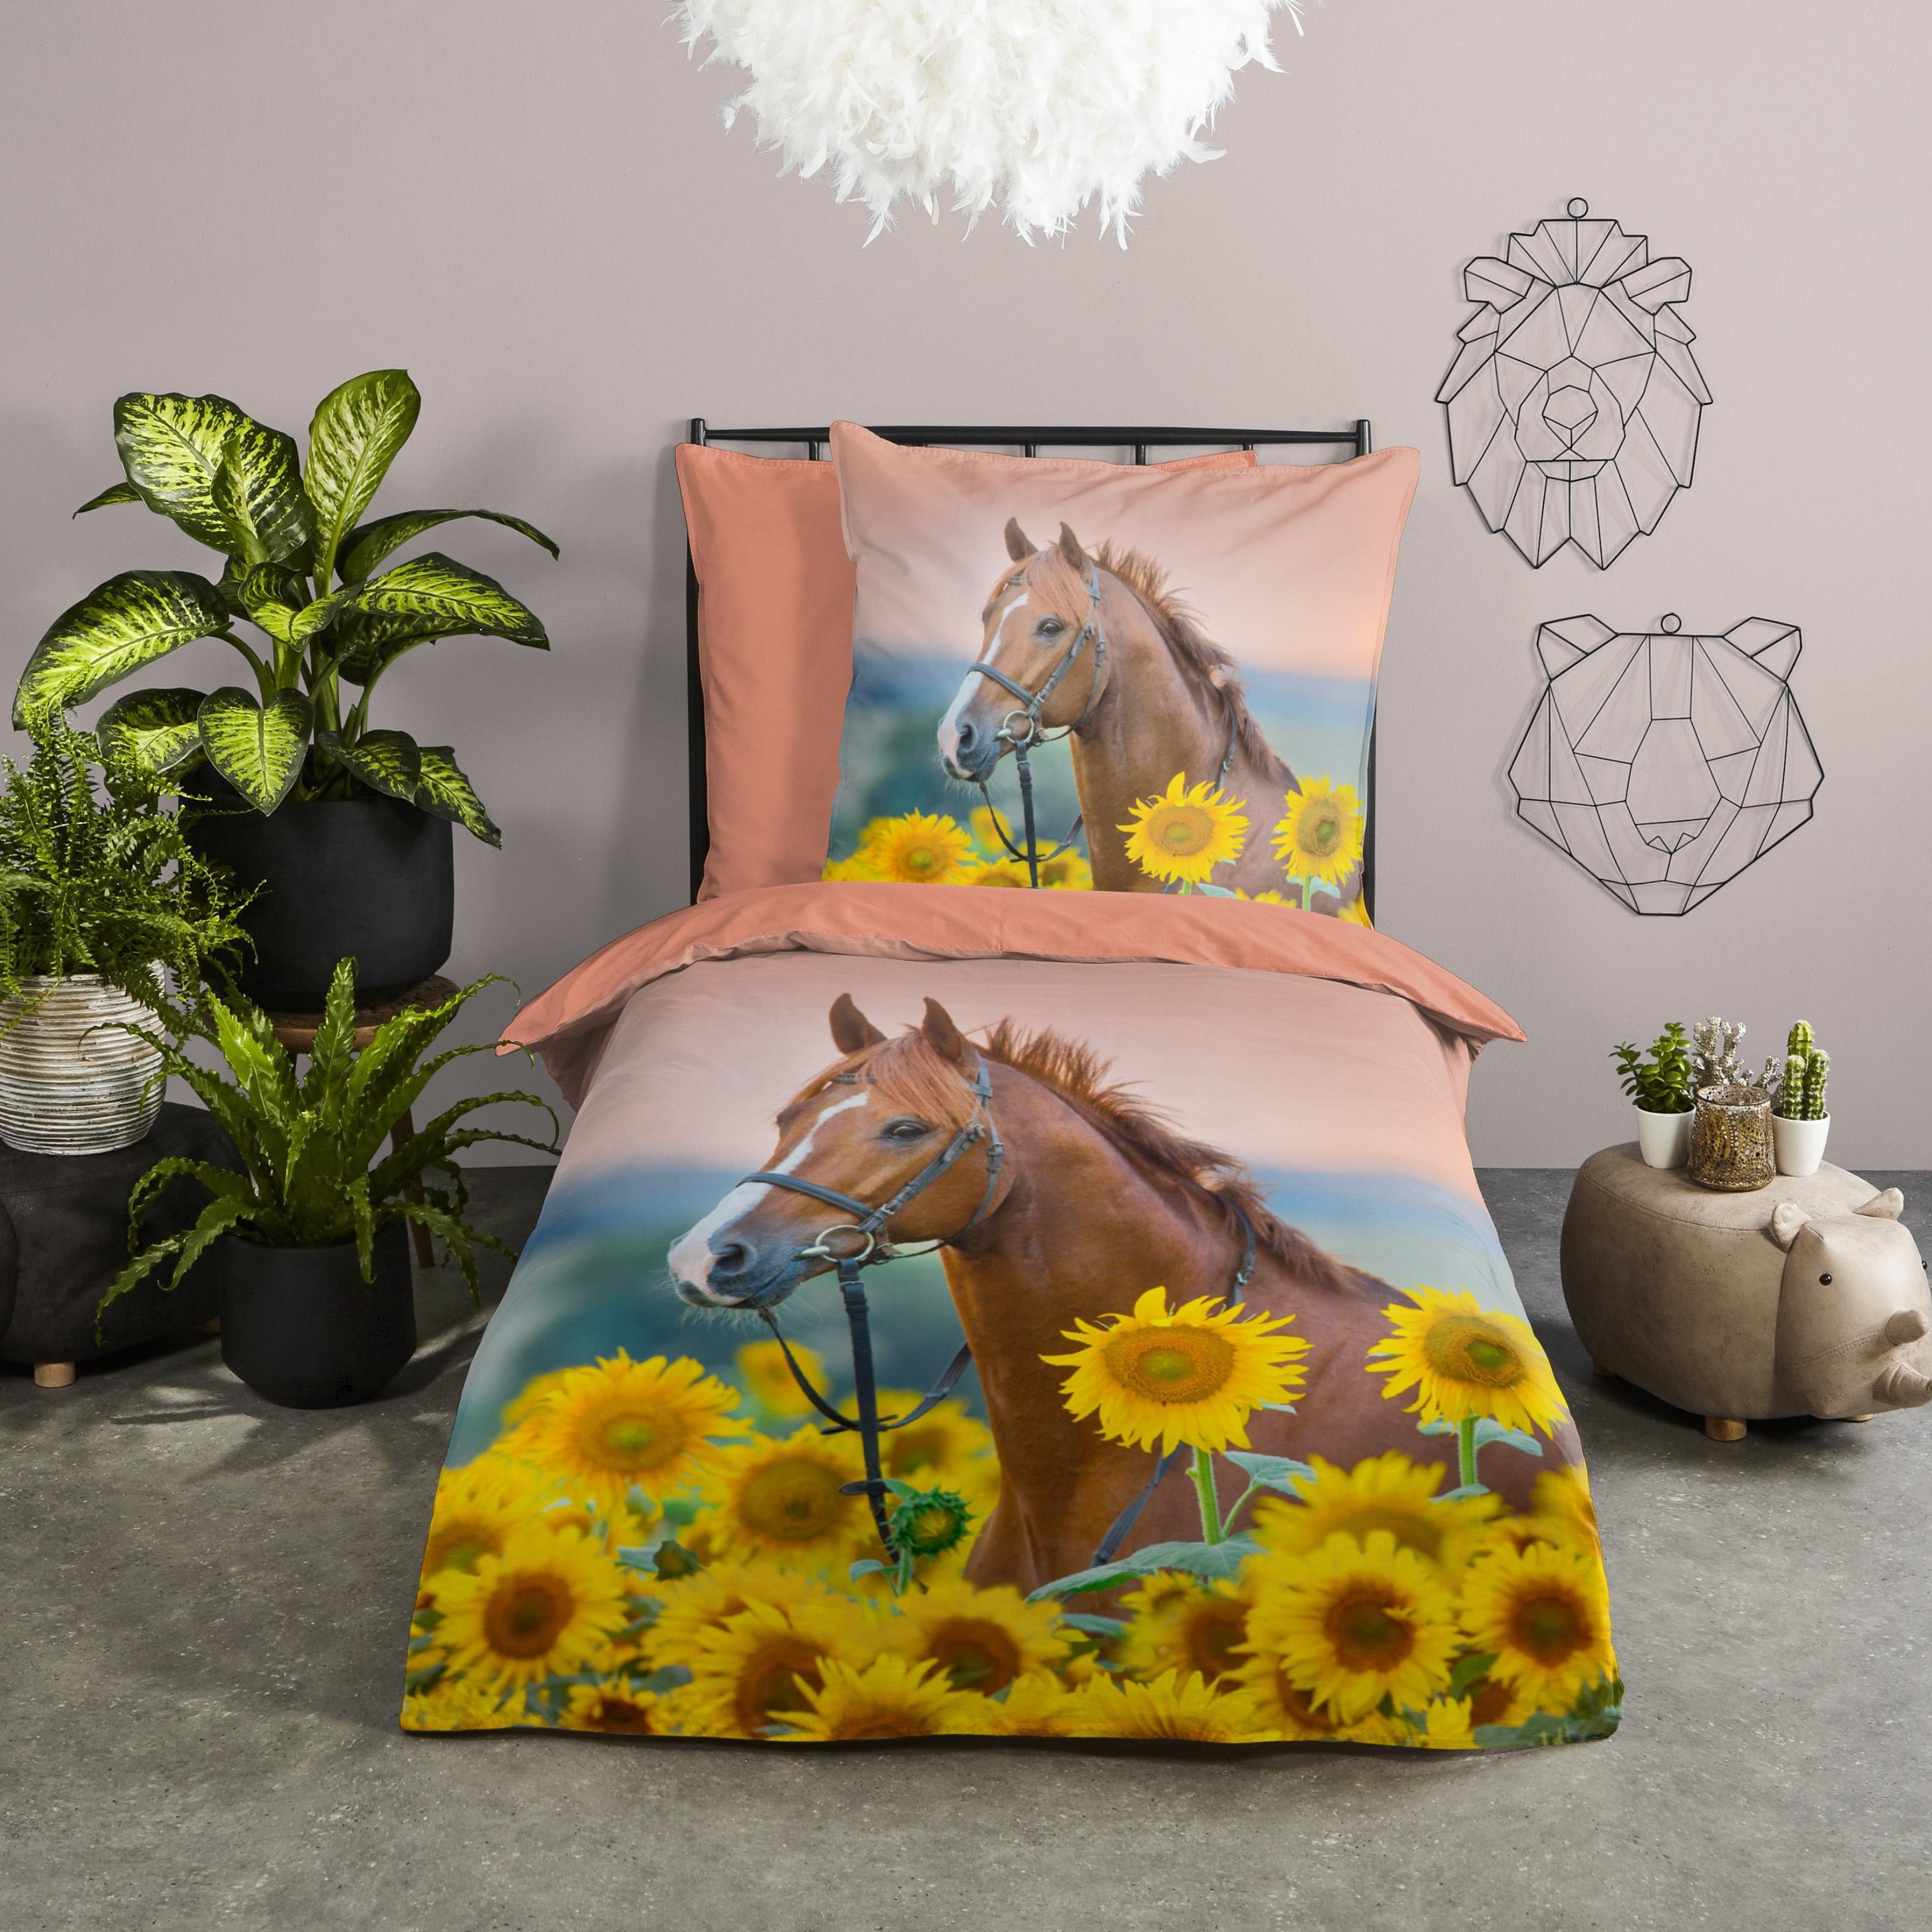 Bettwäsche Pferde Sonnenblumen 135x200 + 80x80 cm, 100 % Baumwolle,  MTOnlinehandel, Renforcé, 2 teilig, Bettwäsche-Set mit Pferdemotiv